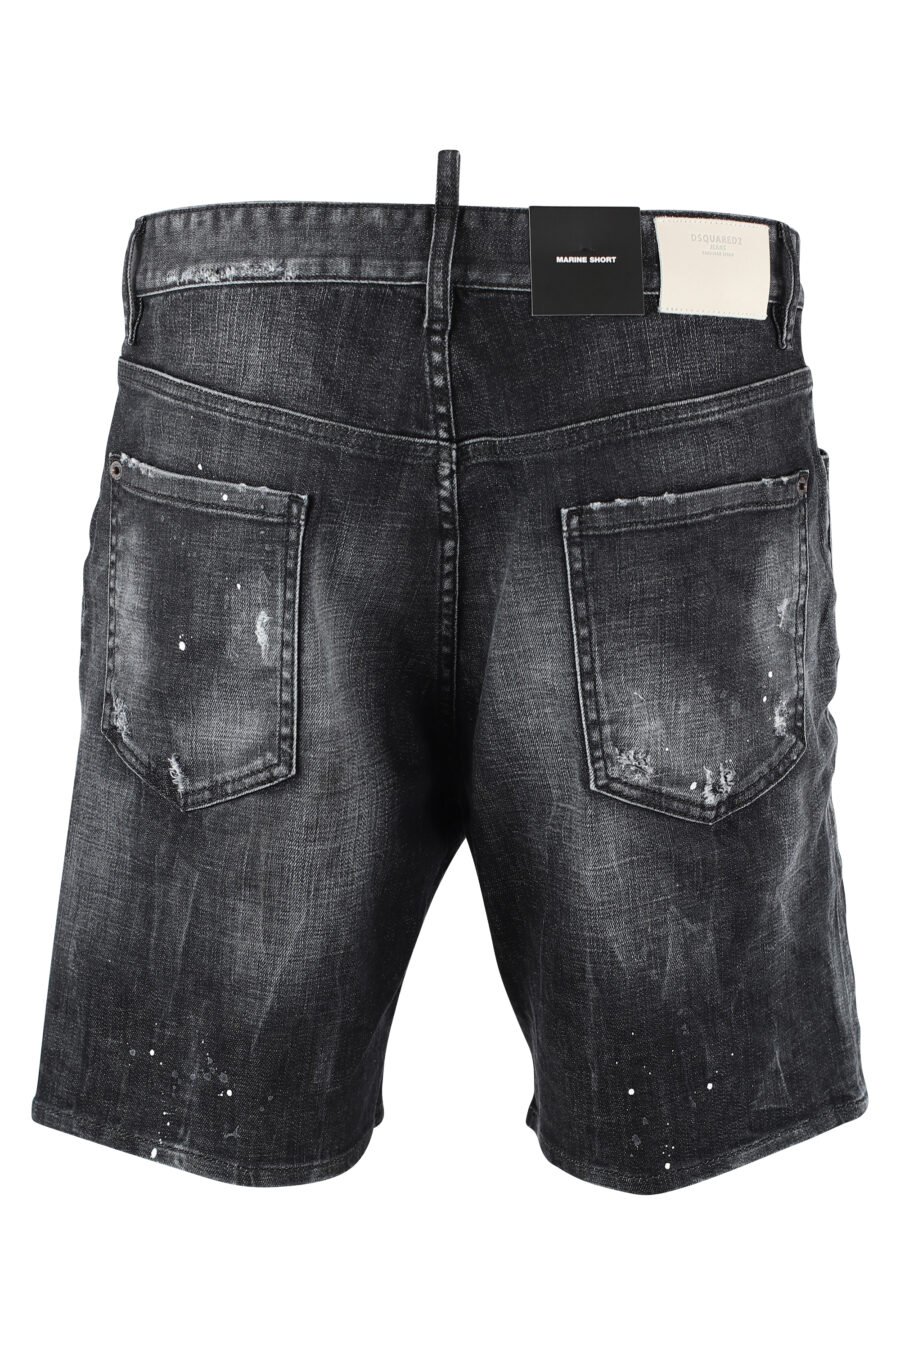 Short en jean noir usé et déchiré - IMG 9730